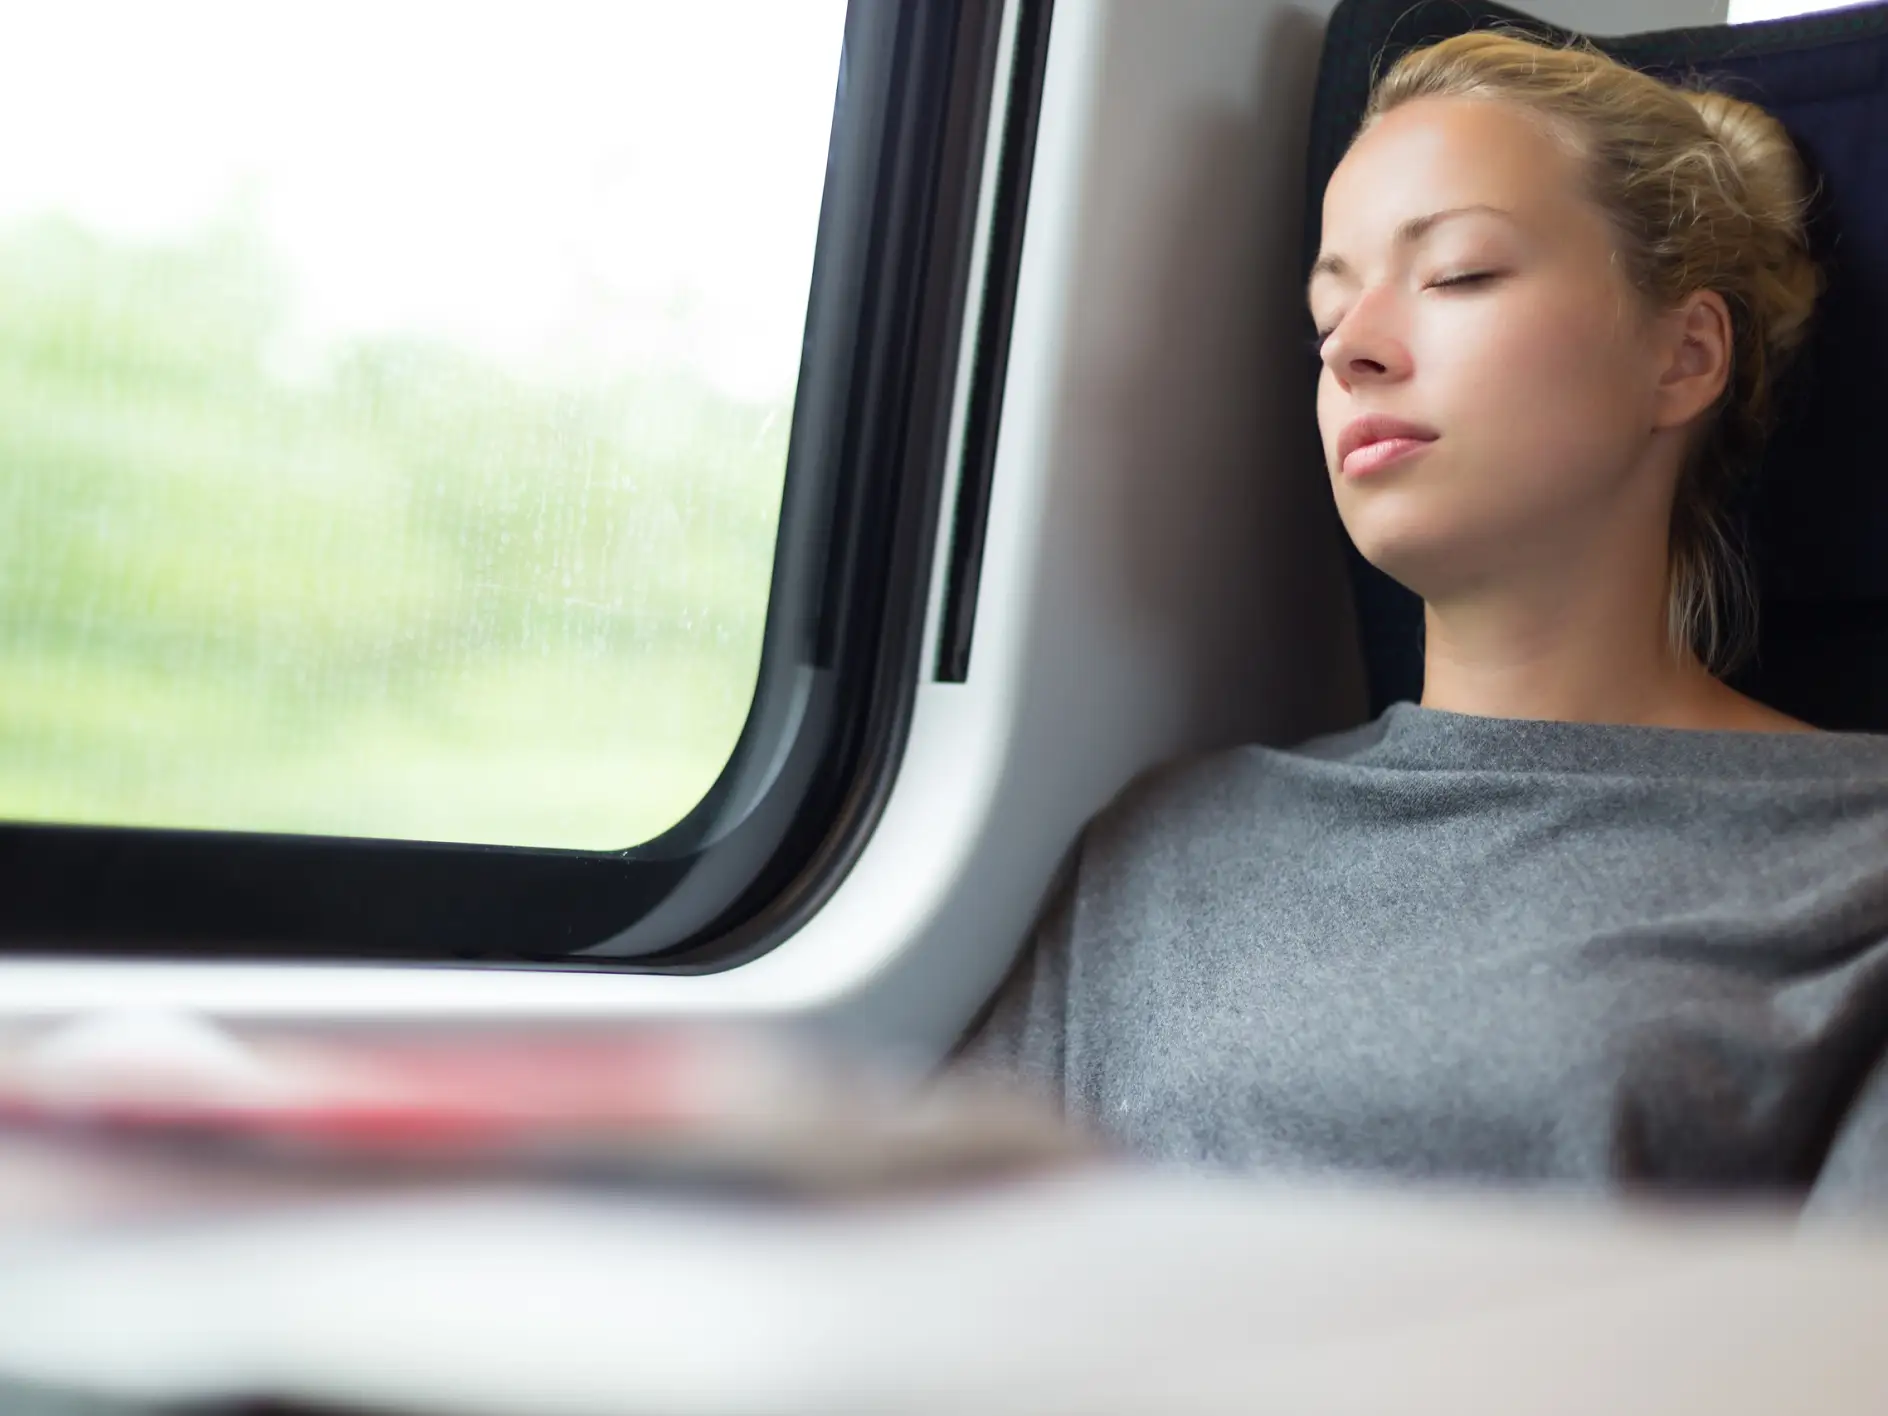 ผู้หญิงท่าทางสบาย ๆ งีบหลับขณะเดินทางบนรถไฟ